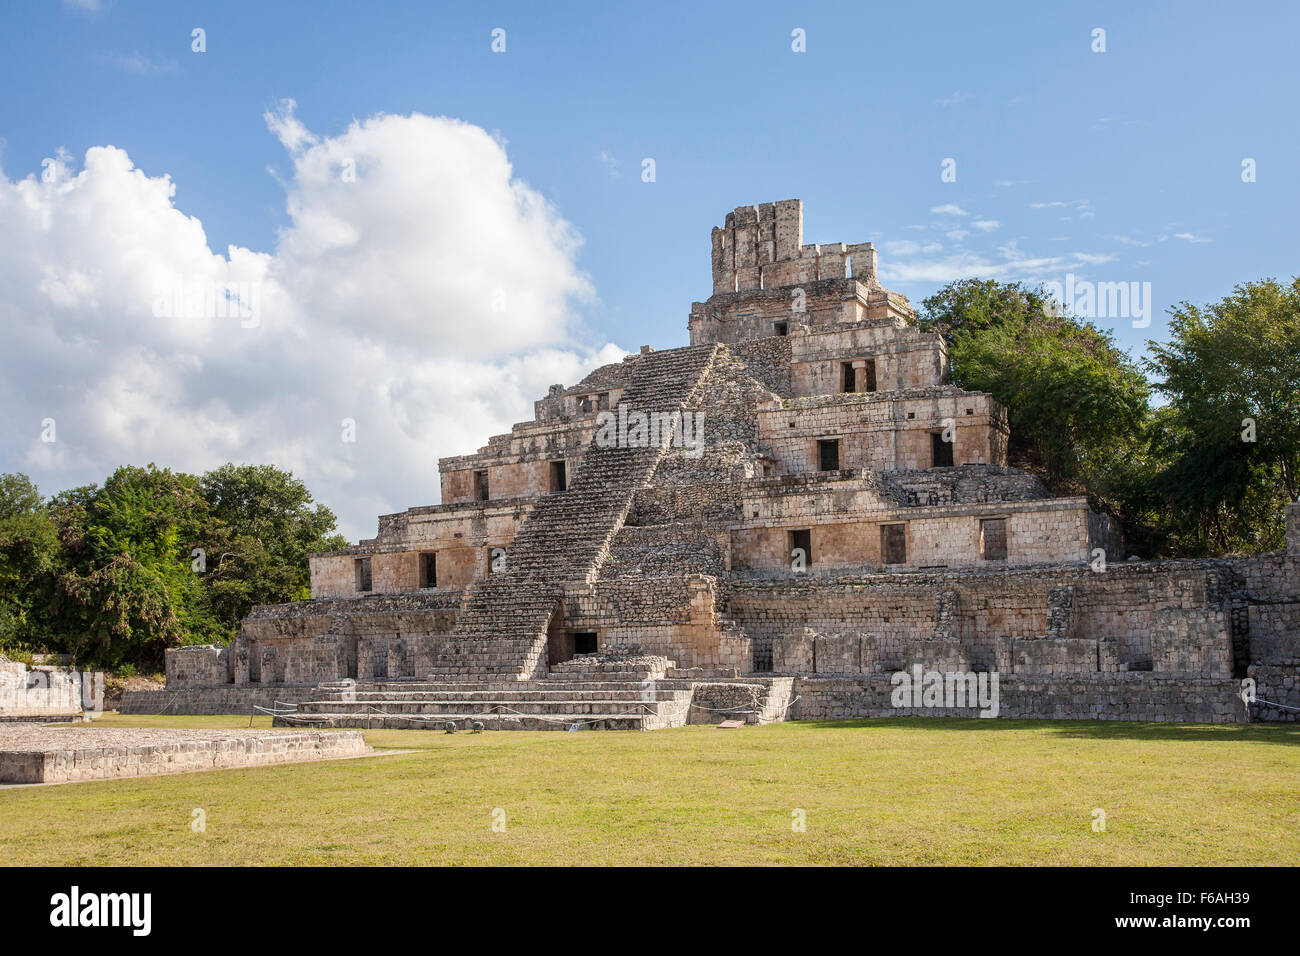 La pirámide de cinco pisos en las ruinas mayas de Edzná, Campeche. Foto de stock